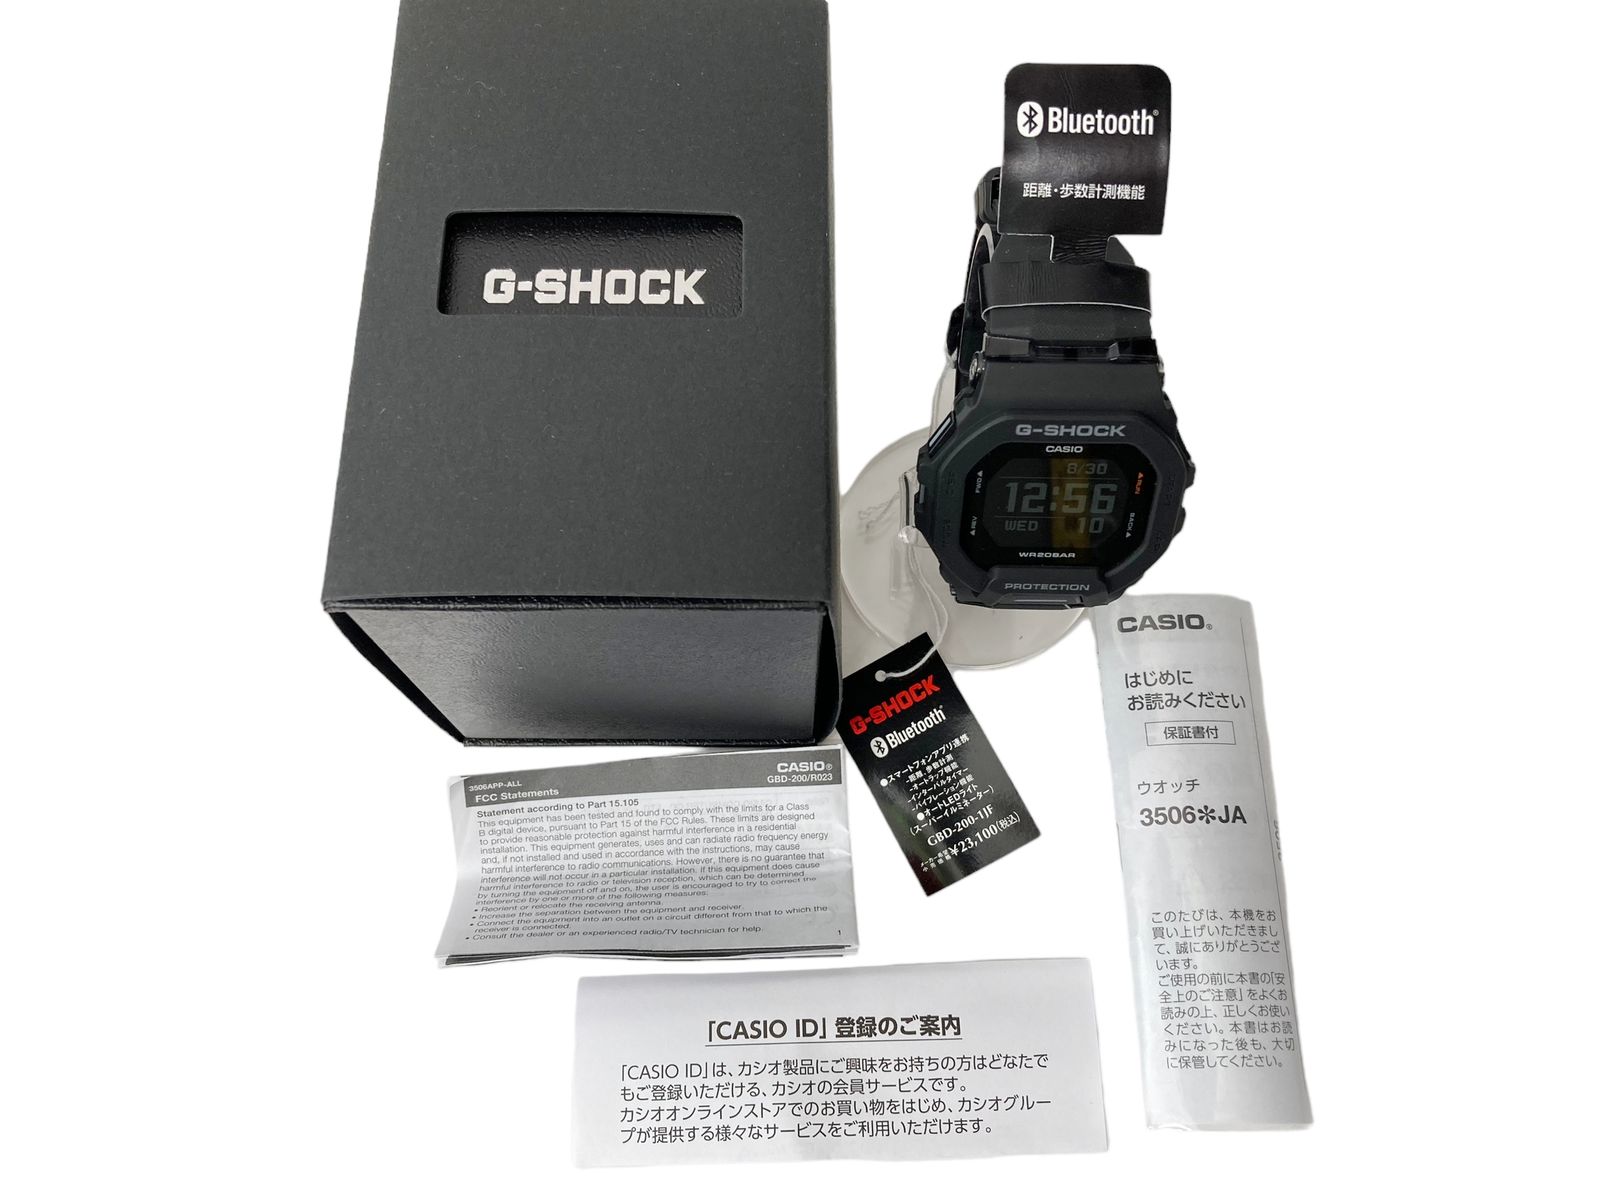 CASIO (カシオ) G-SHOCK Gショック G-SQUAD デジタル腕時計 GBD-200